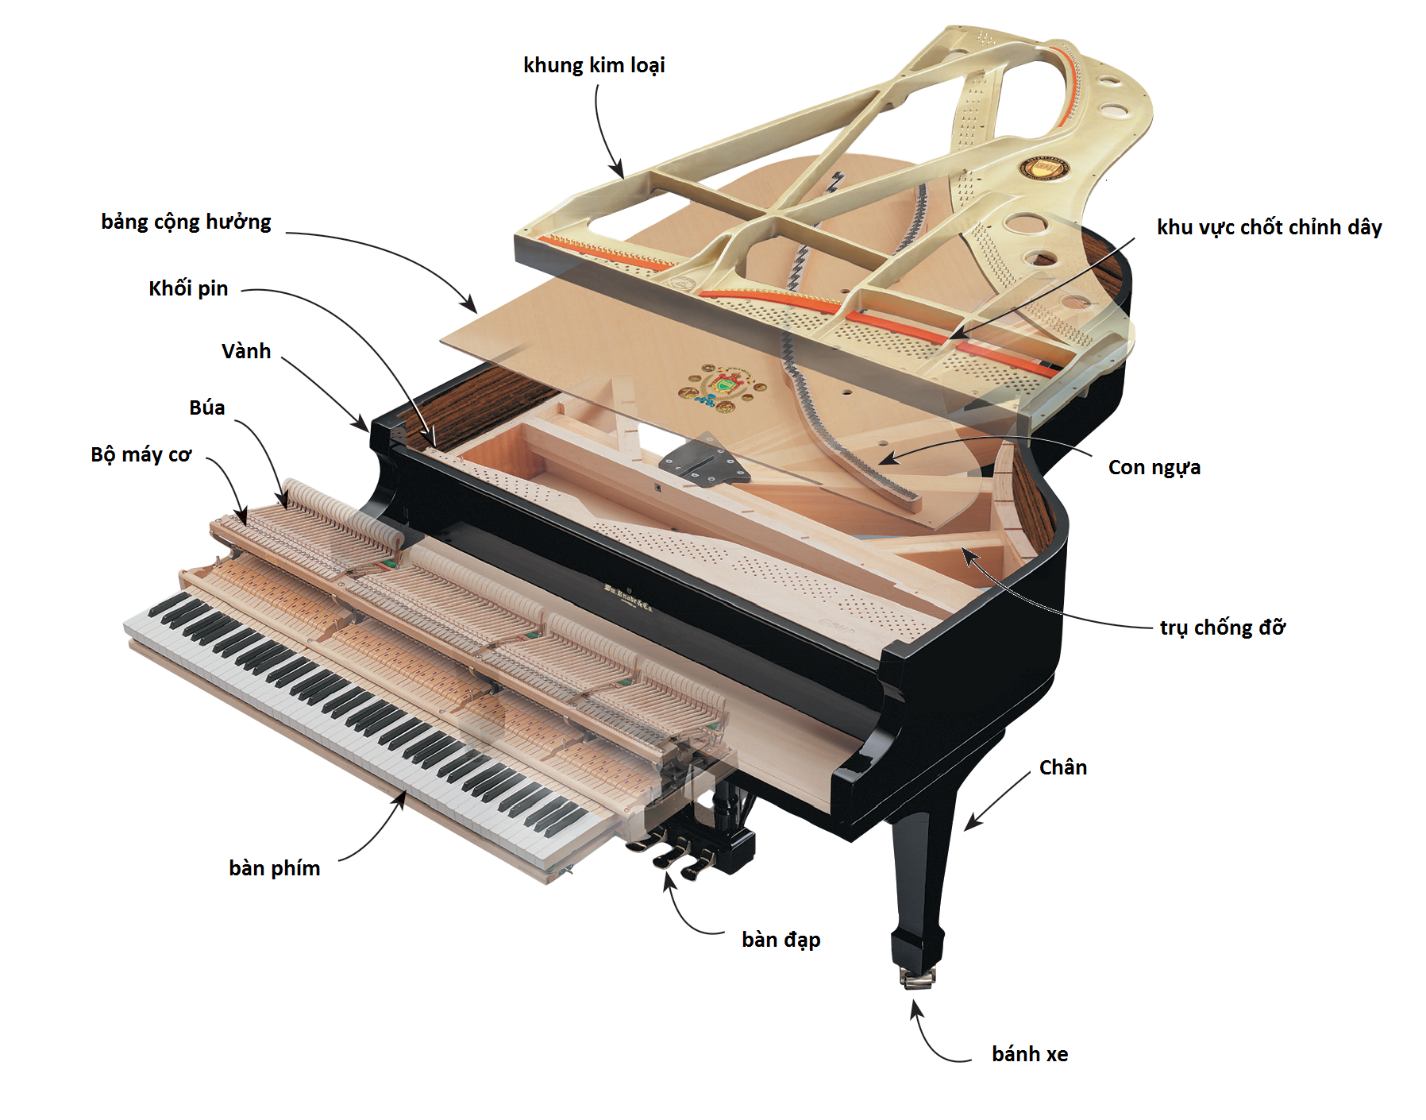 Cấu tạo đàn piano phức tạp nên mất nhiều thời gian để sản xuất hoàn thiện nên giá tiền đàn piano thường cao